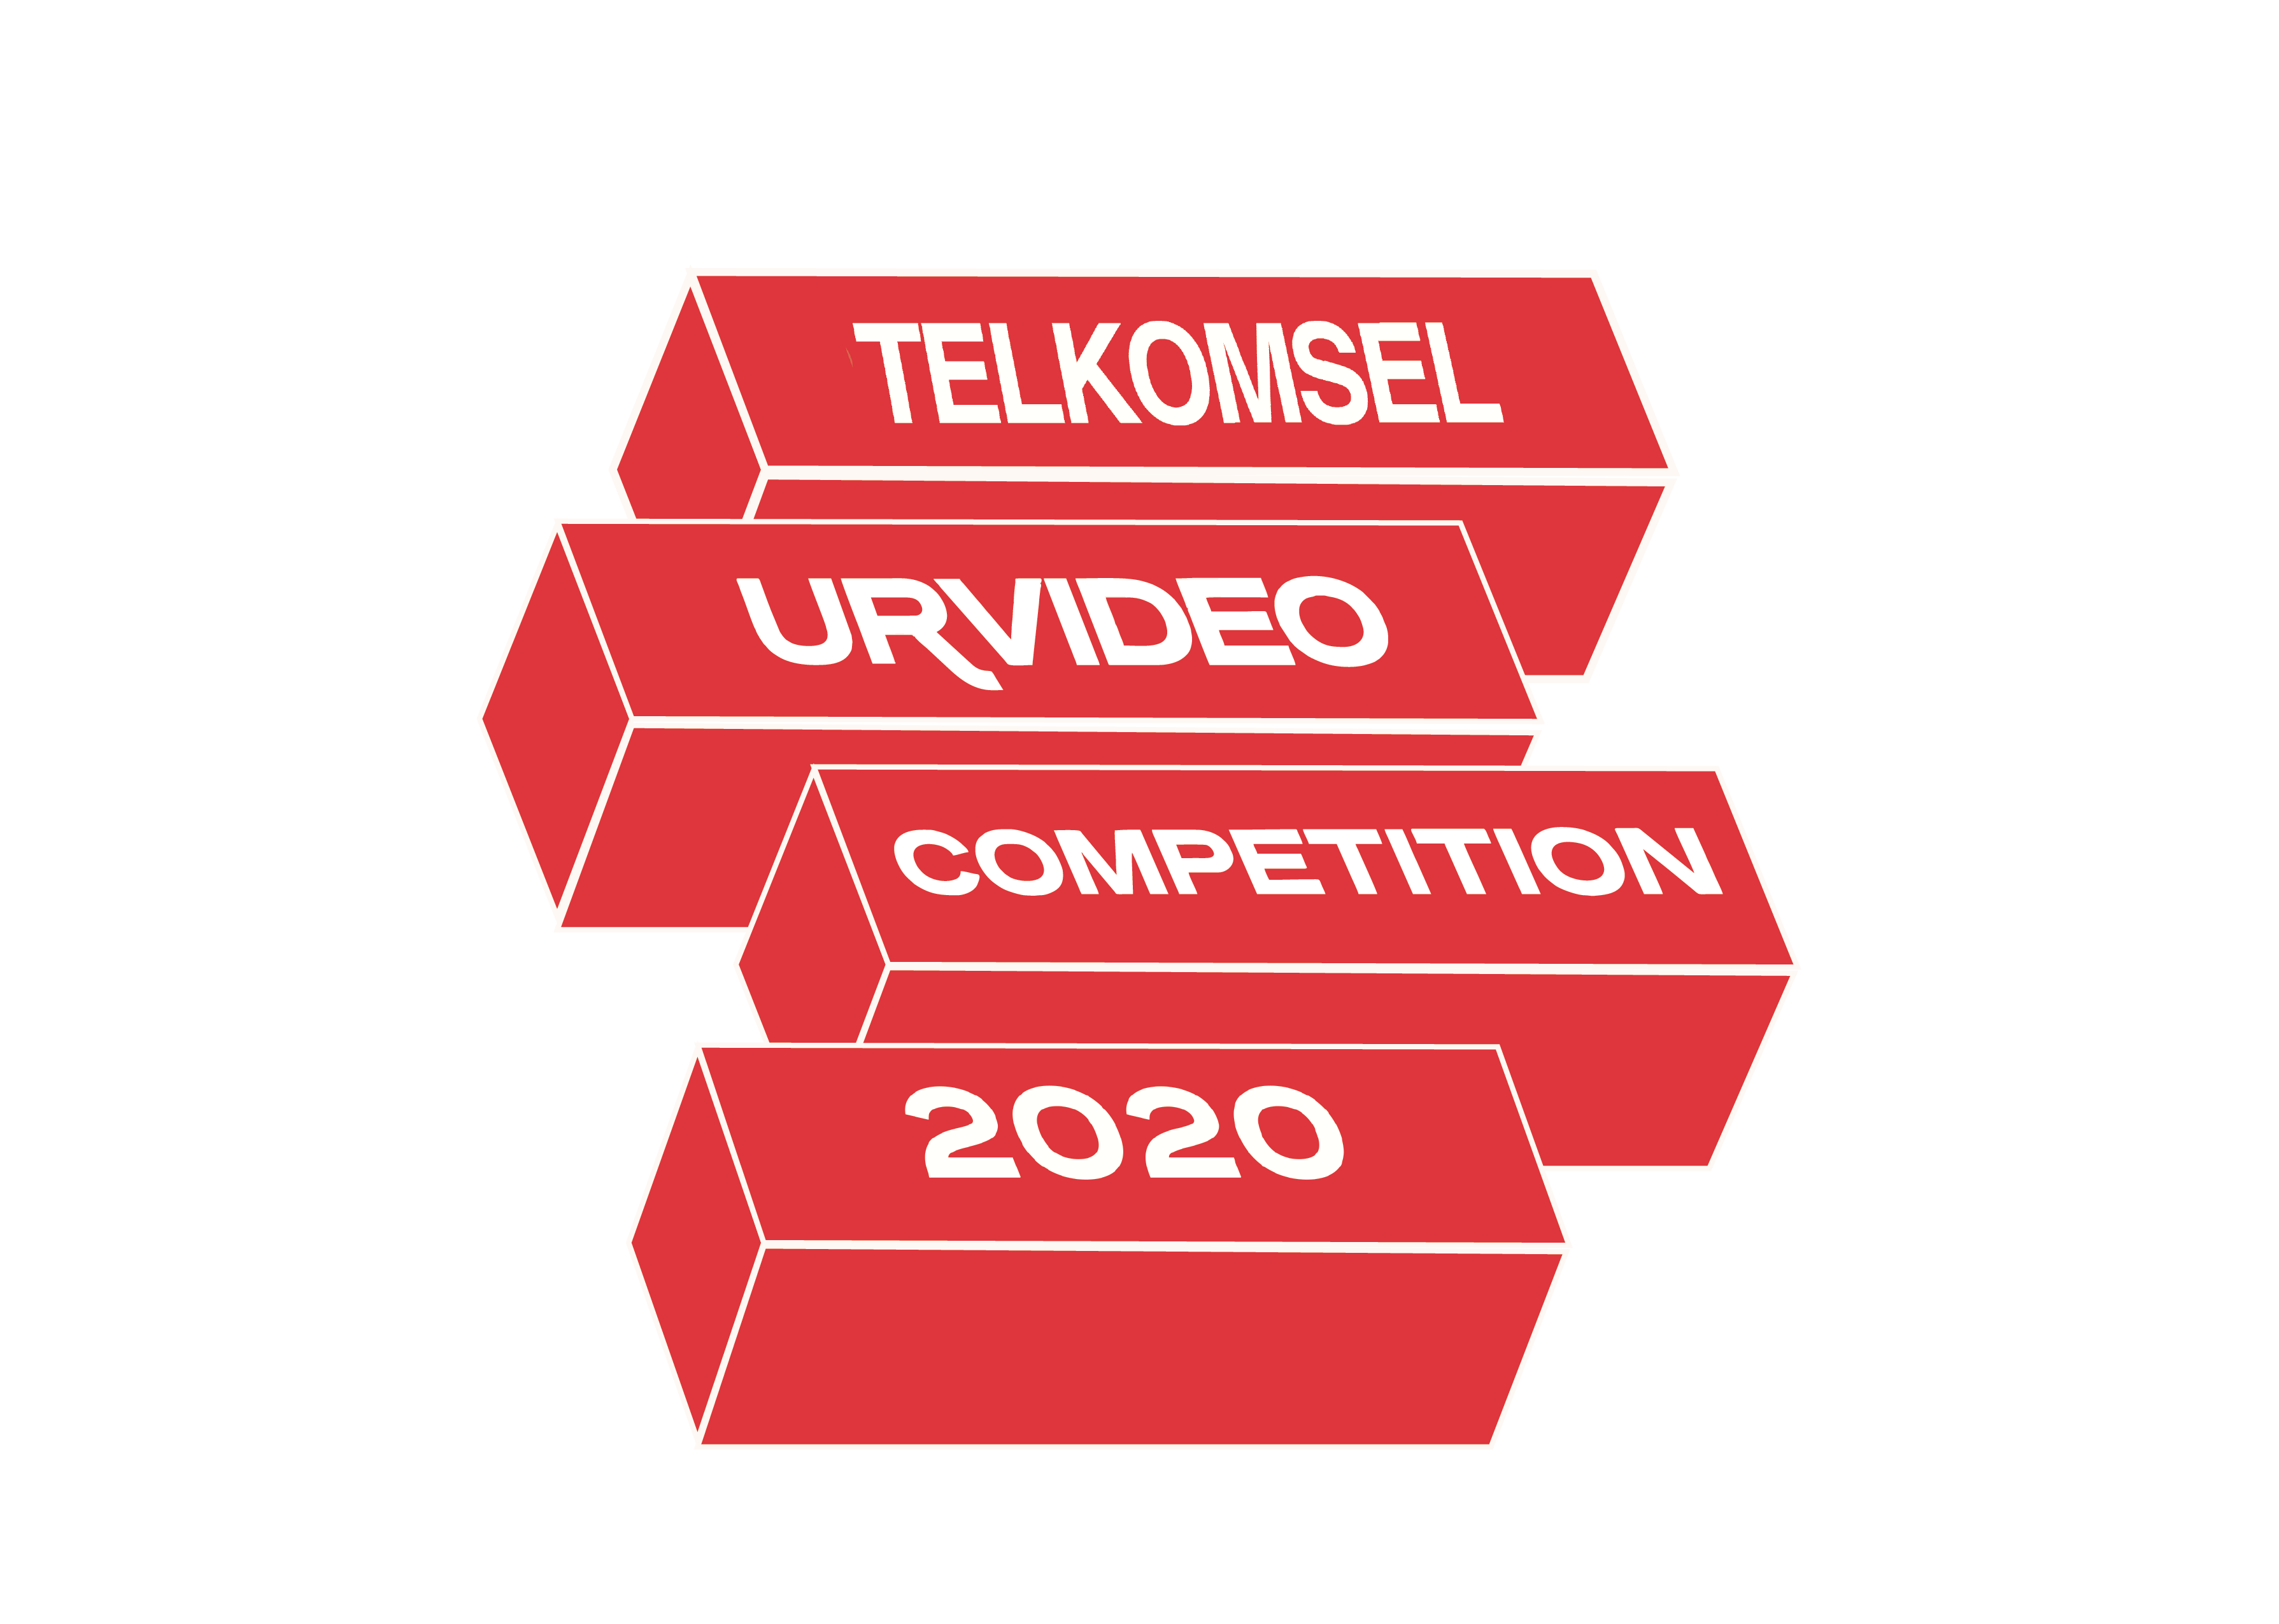 Buruan! Masih Ada 7 Hari untuk Dapat Jutaan Rupiah dari 'Telkomsel URvideo Competition 2020' 